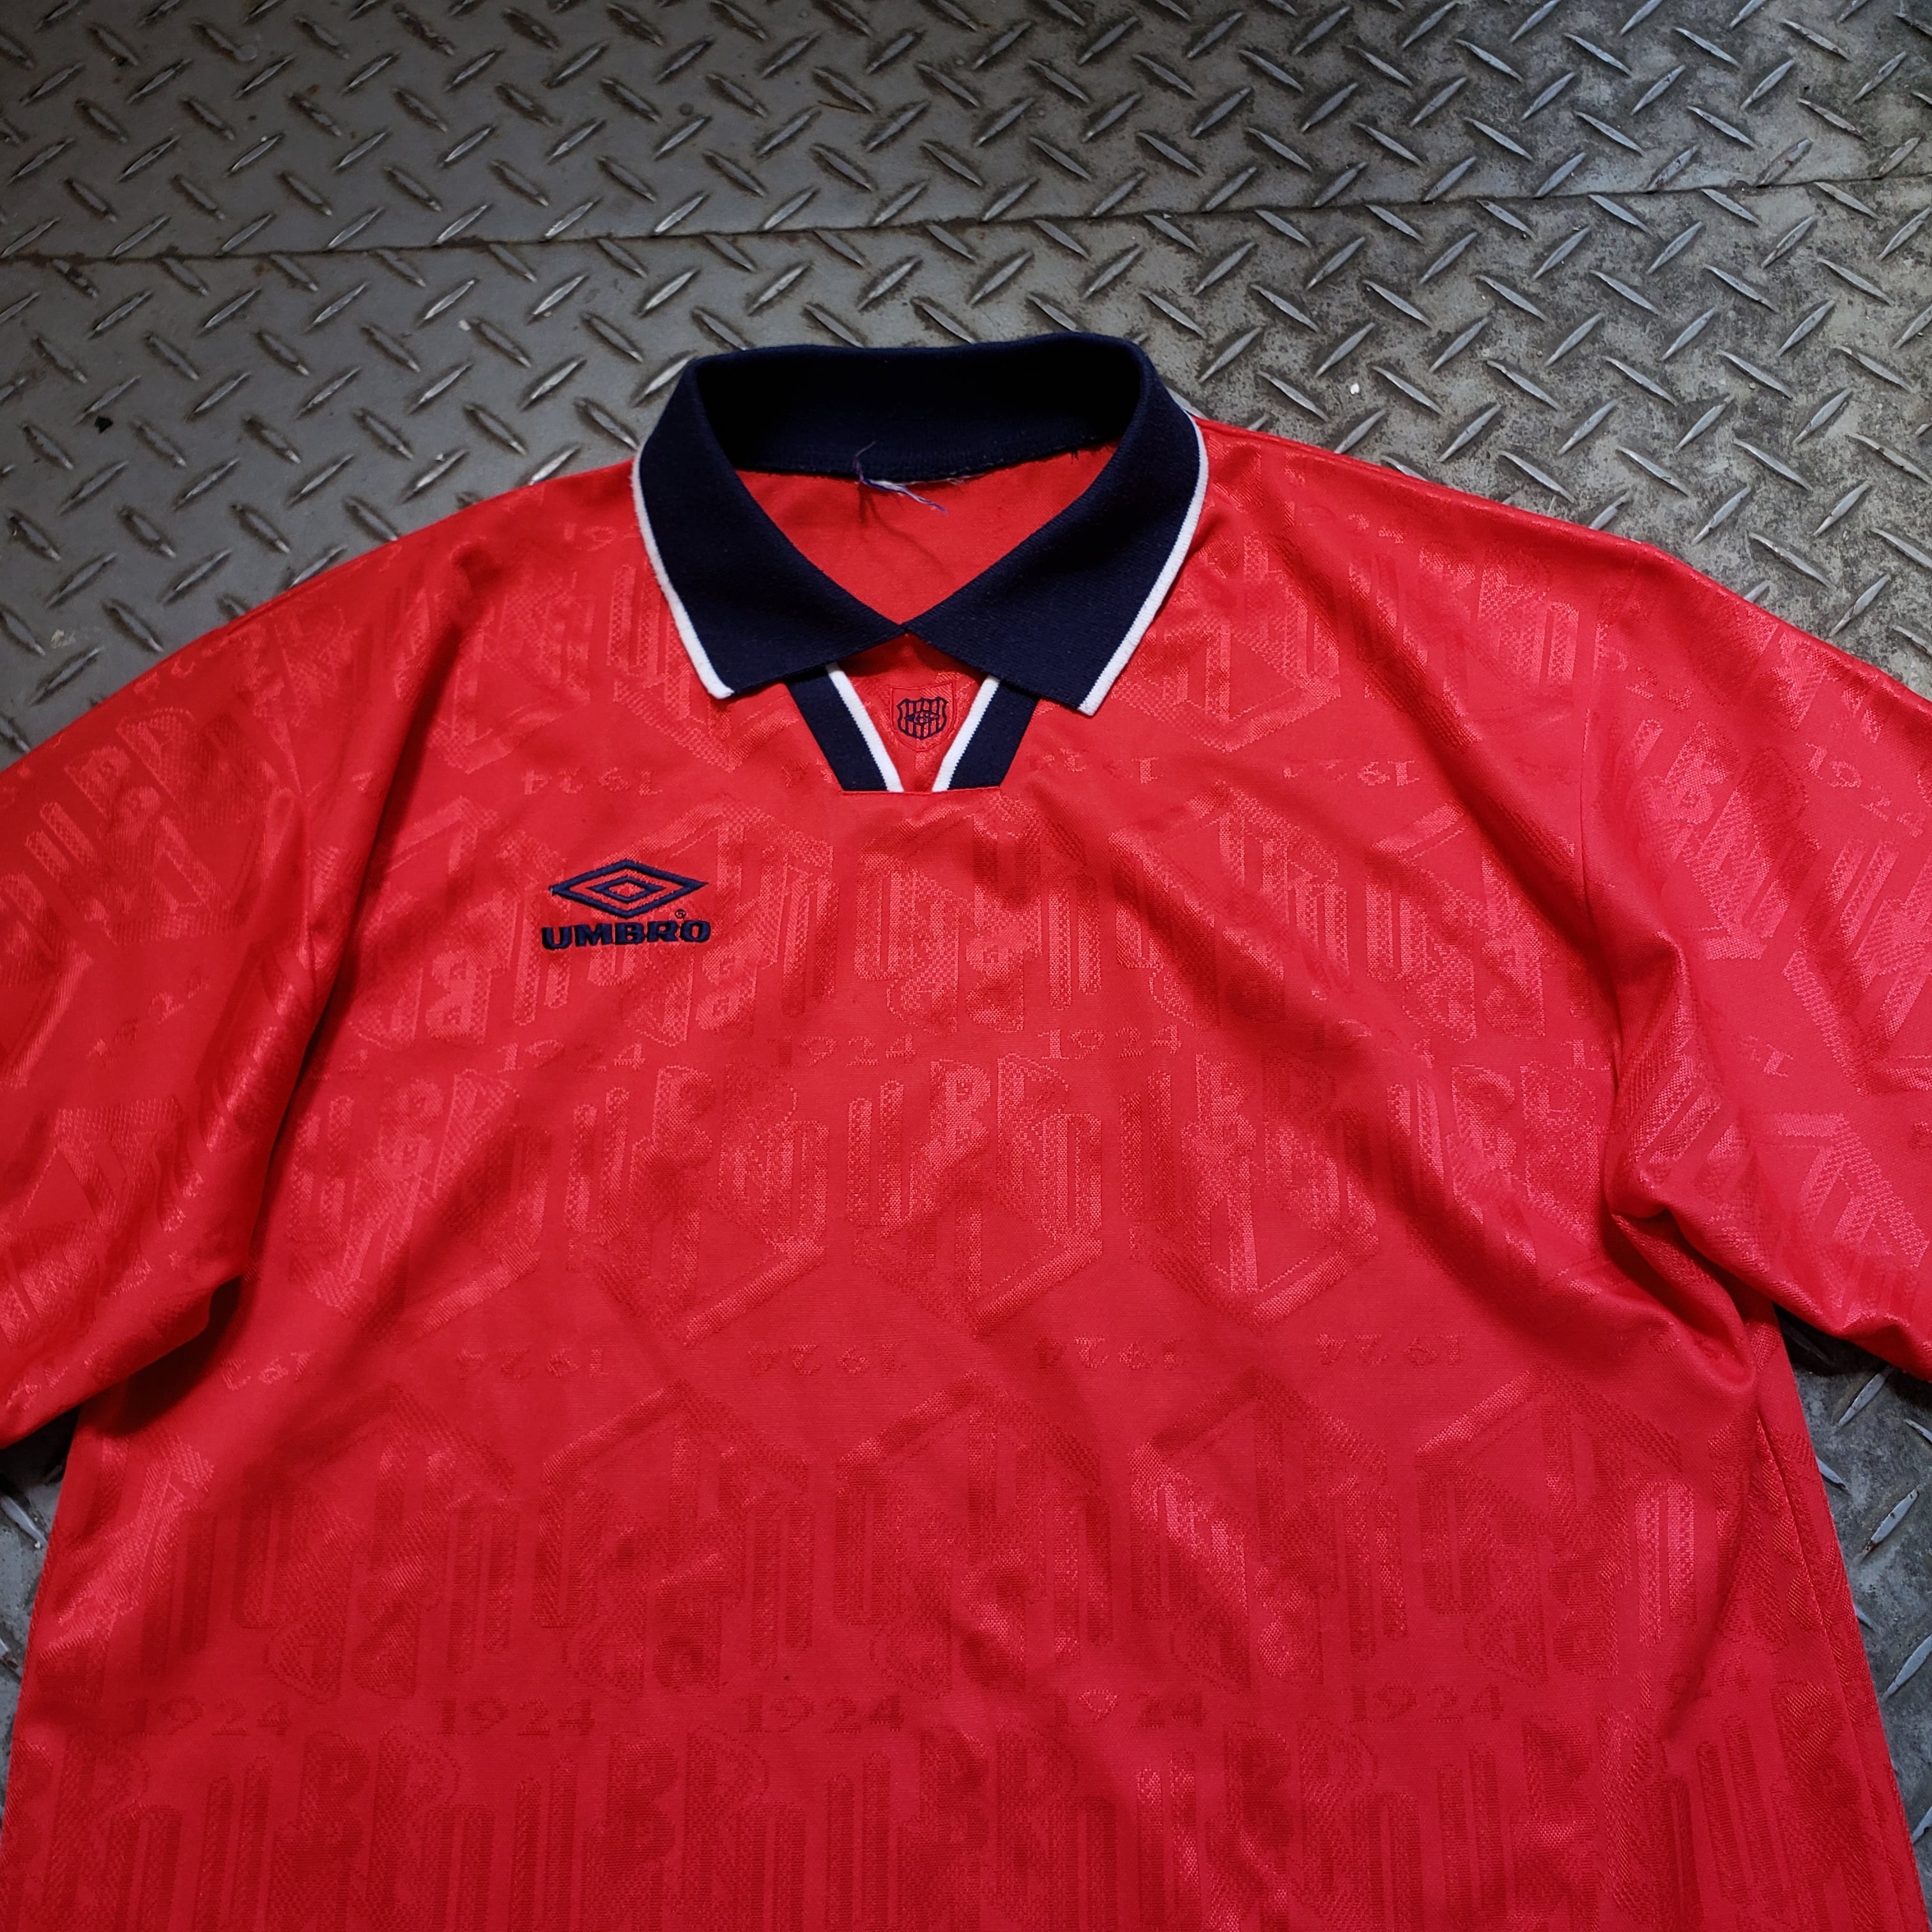 UNBRO アンブロ 70s 80s ヴィンテージ フットボールシャツSサイズ